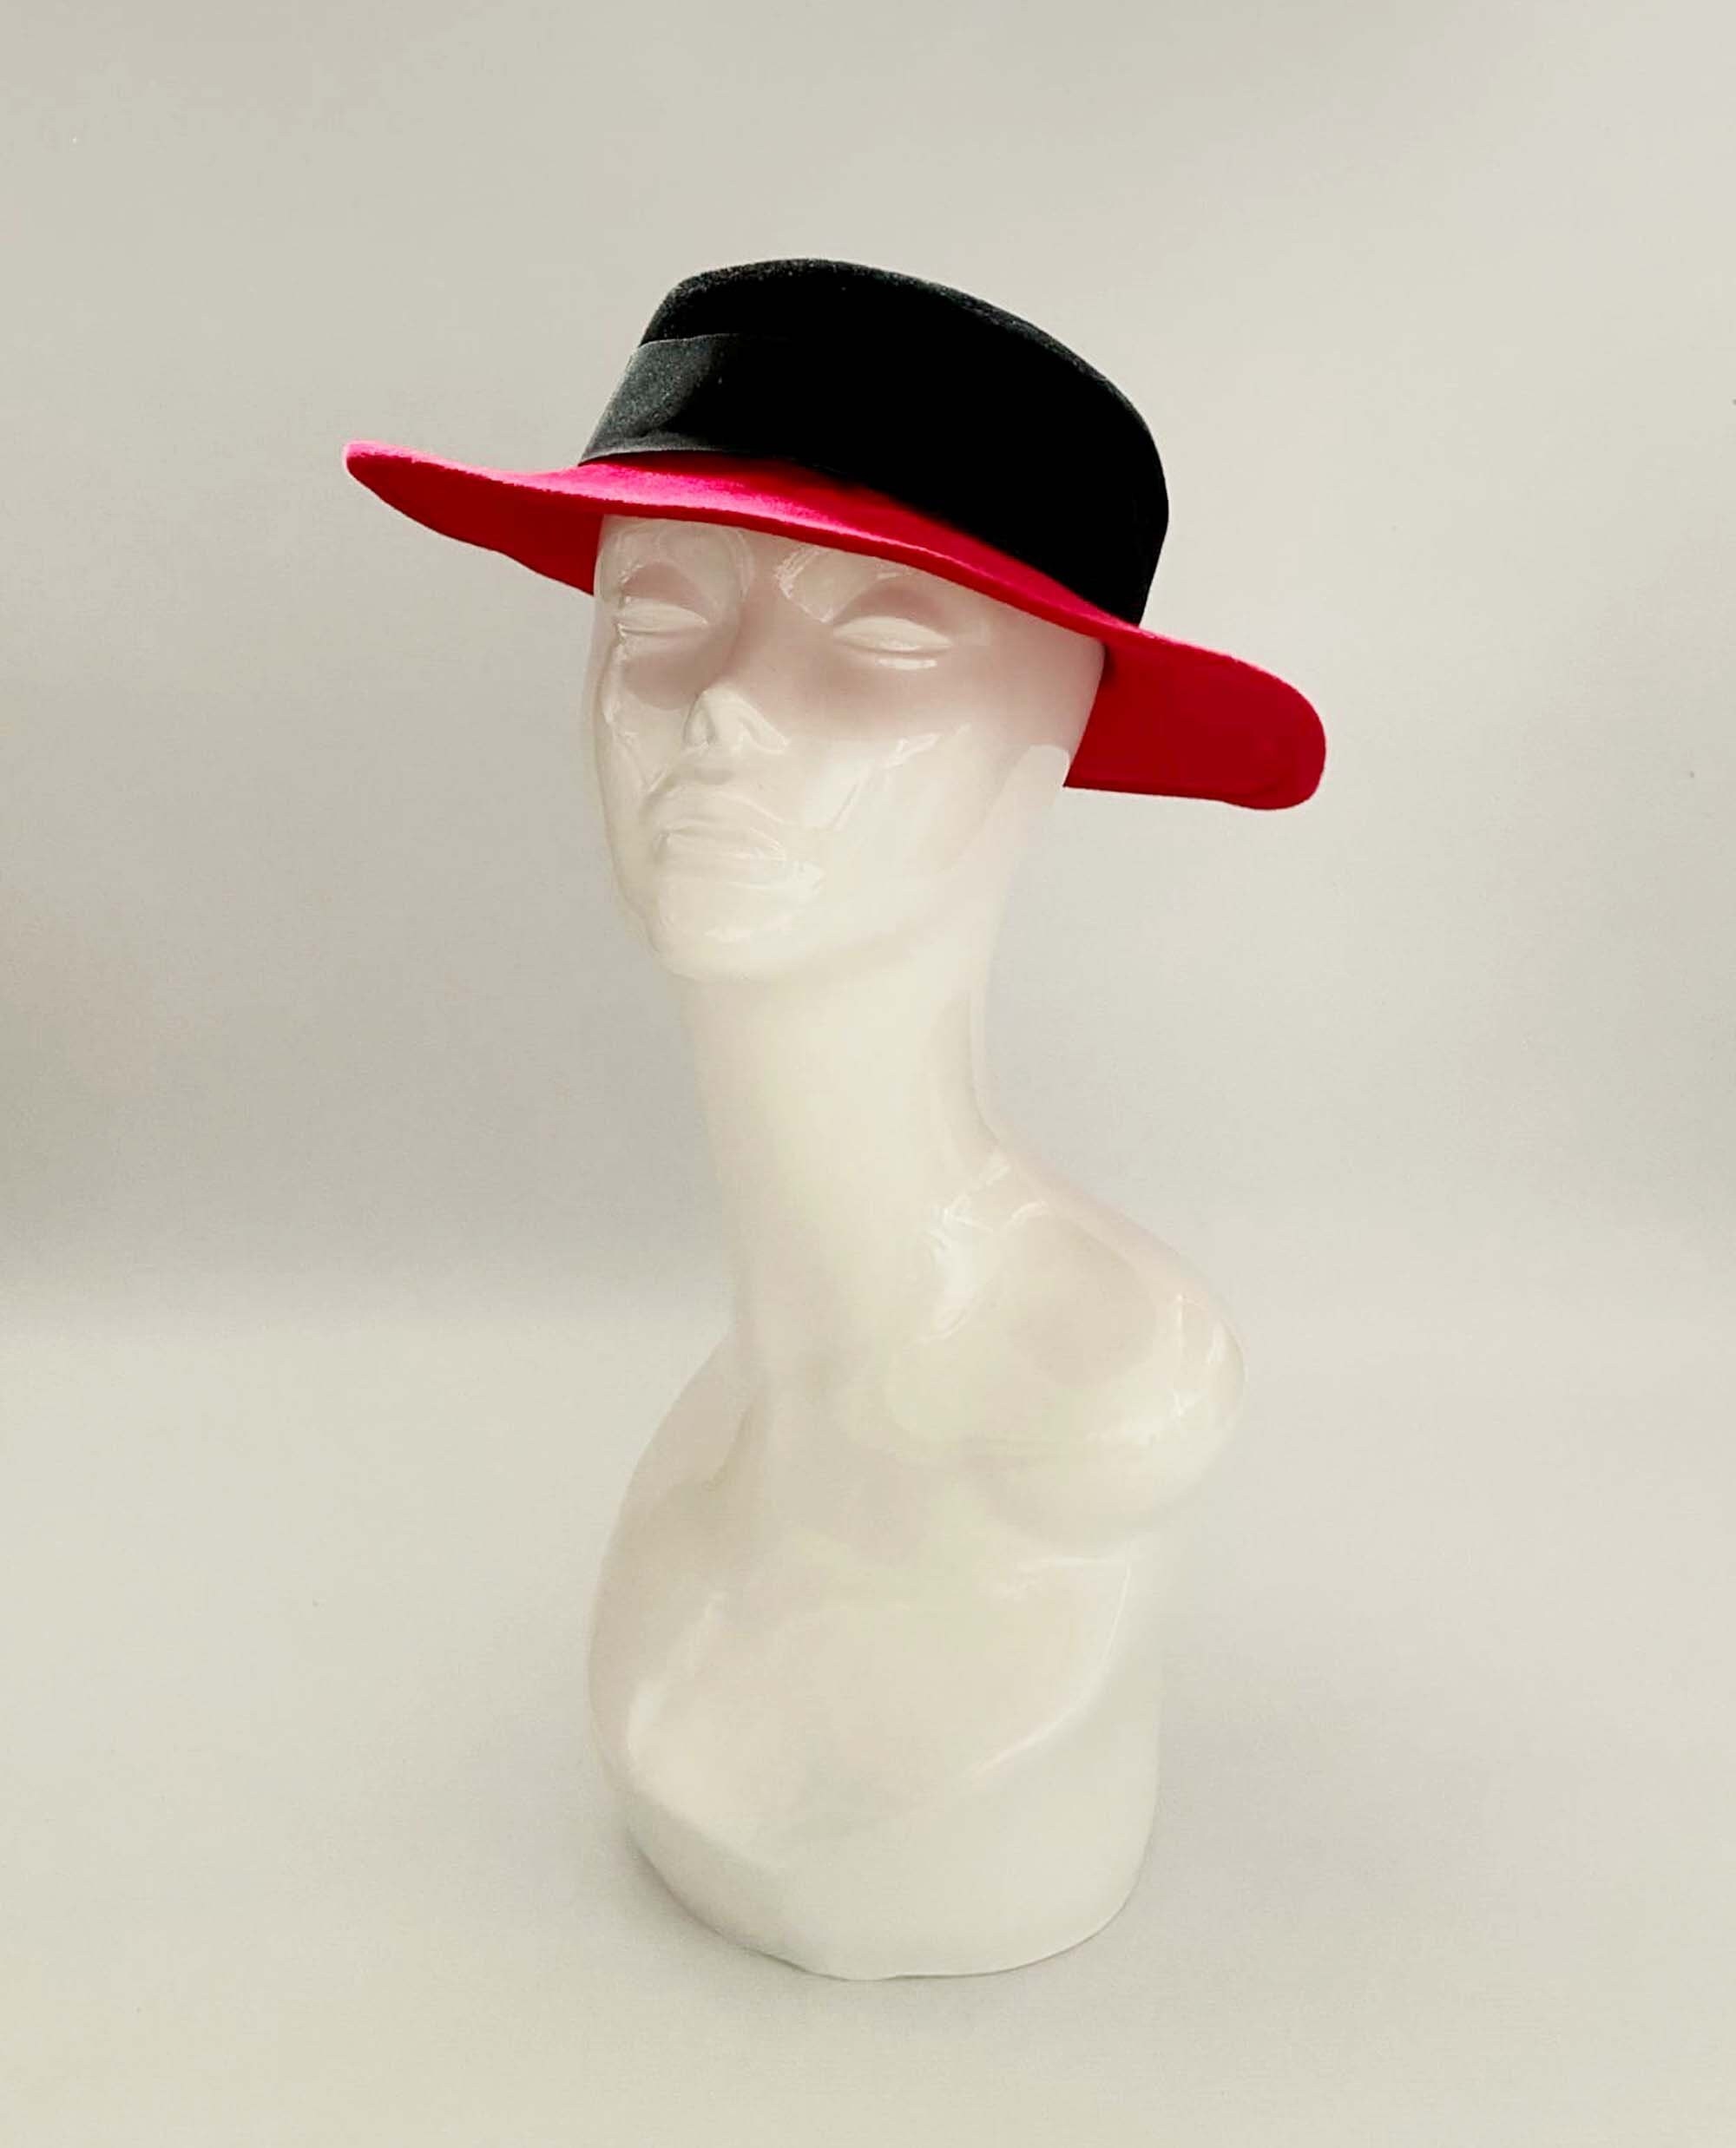 Ascot hat burlesque hat races hat wedding hat Vintage formal hat church hat,wool hat floppy hat